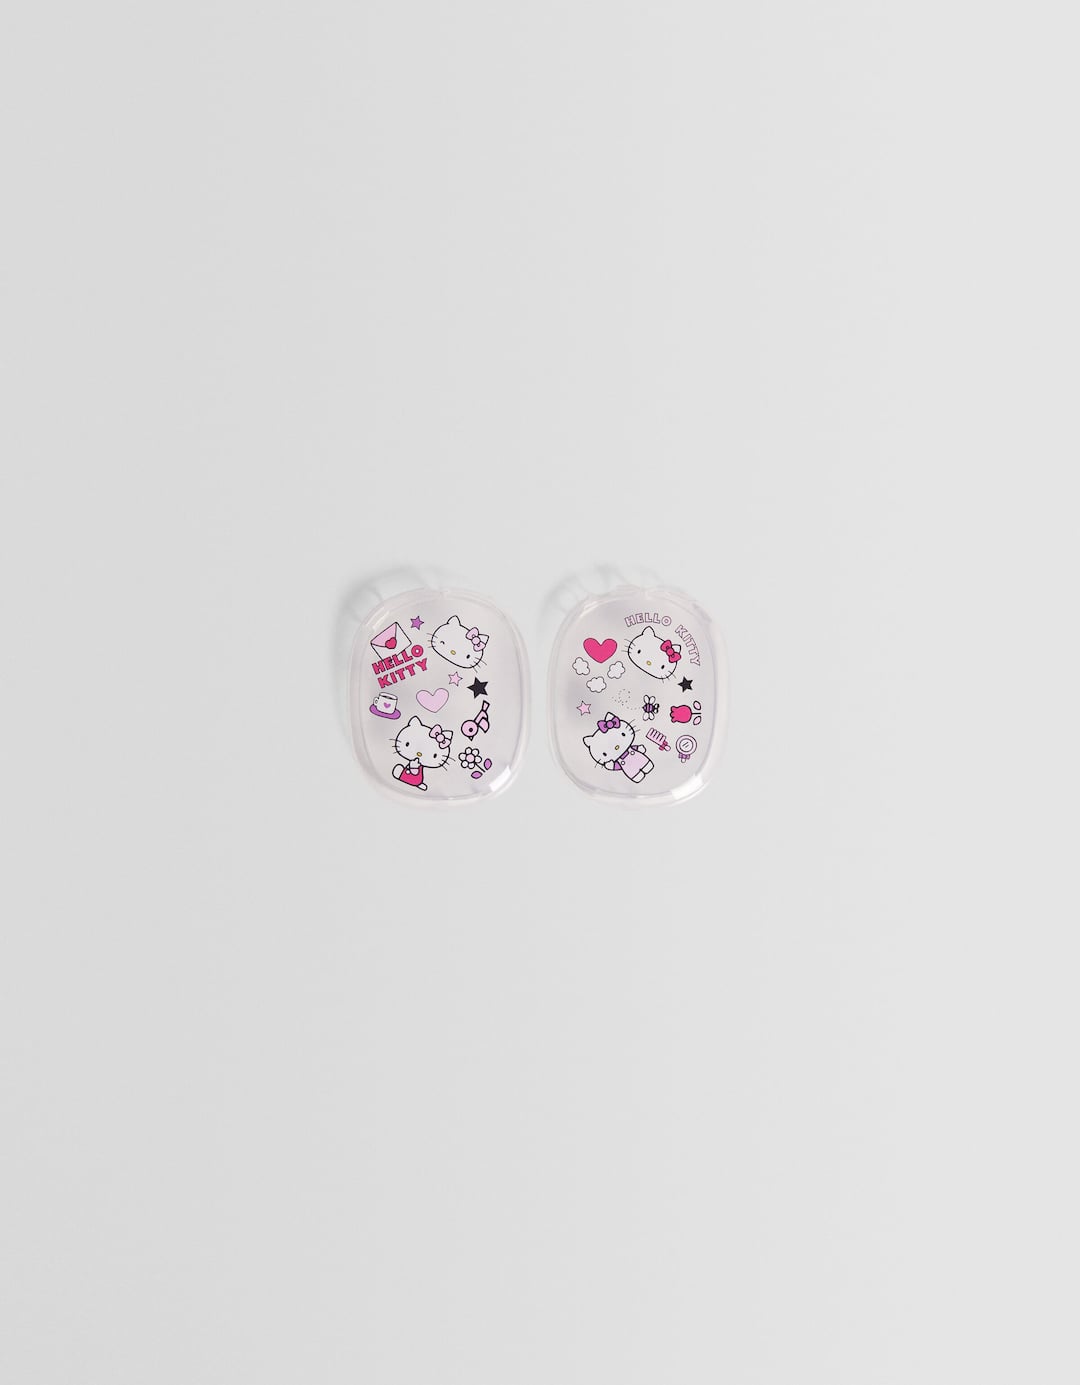 Sarung AirPods Max gambar Hello Kitty